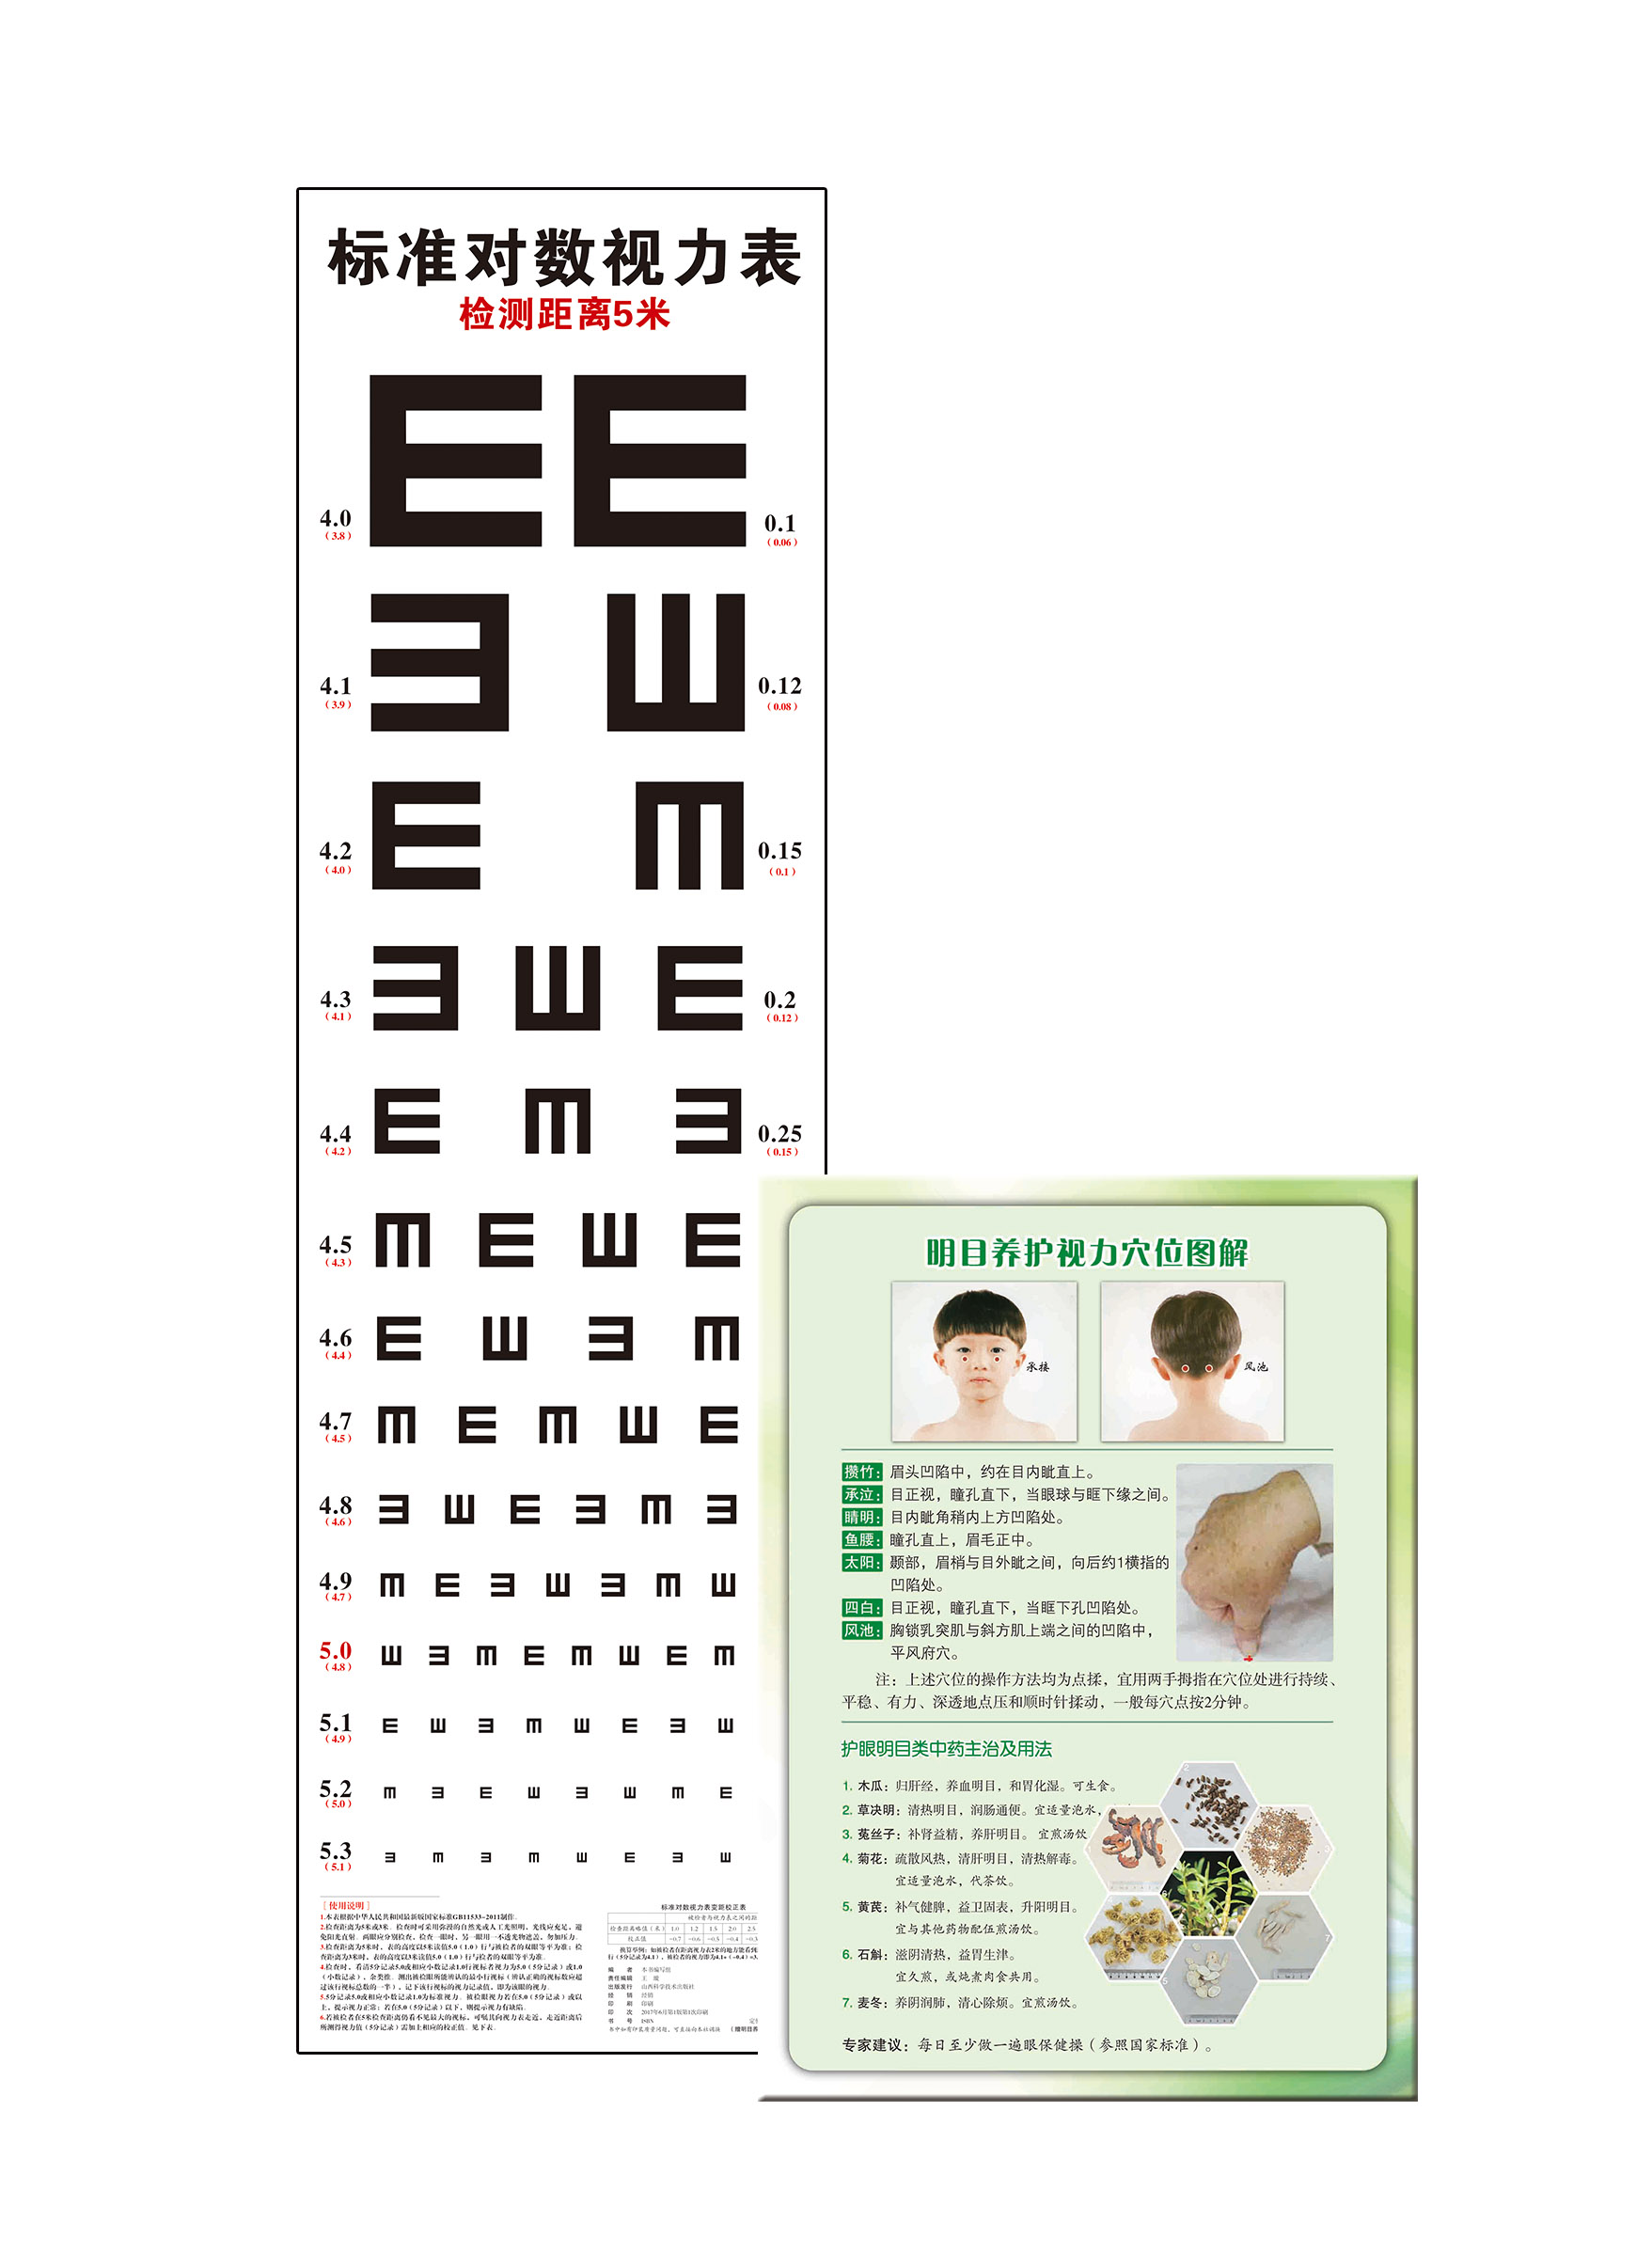 标准对数视力表 山西科学技术出版社 正版医学图书图表  学校体检、药房检测、家庭测试、拼音挂图